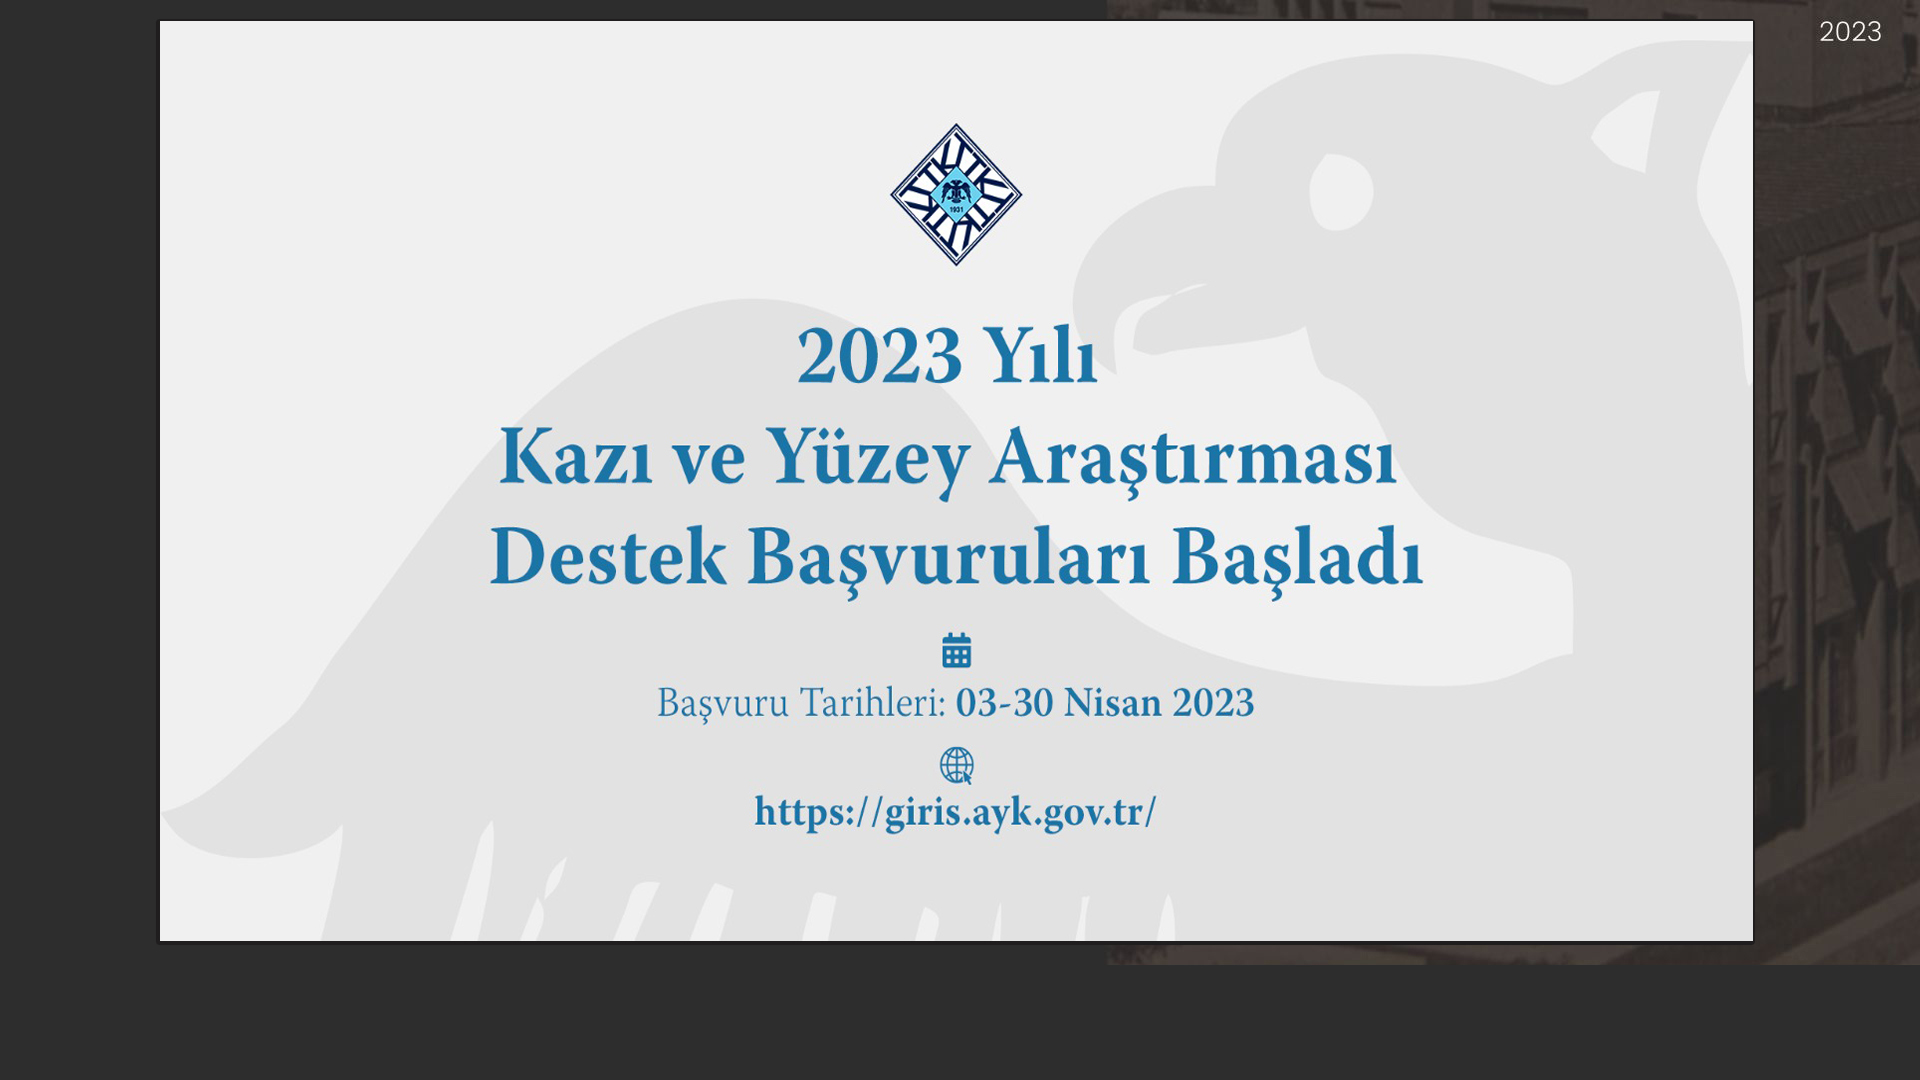  2023 Yılı Kazı ve Yüzey Araştırması Destek Başvuruları